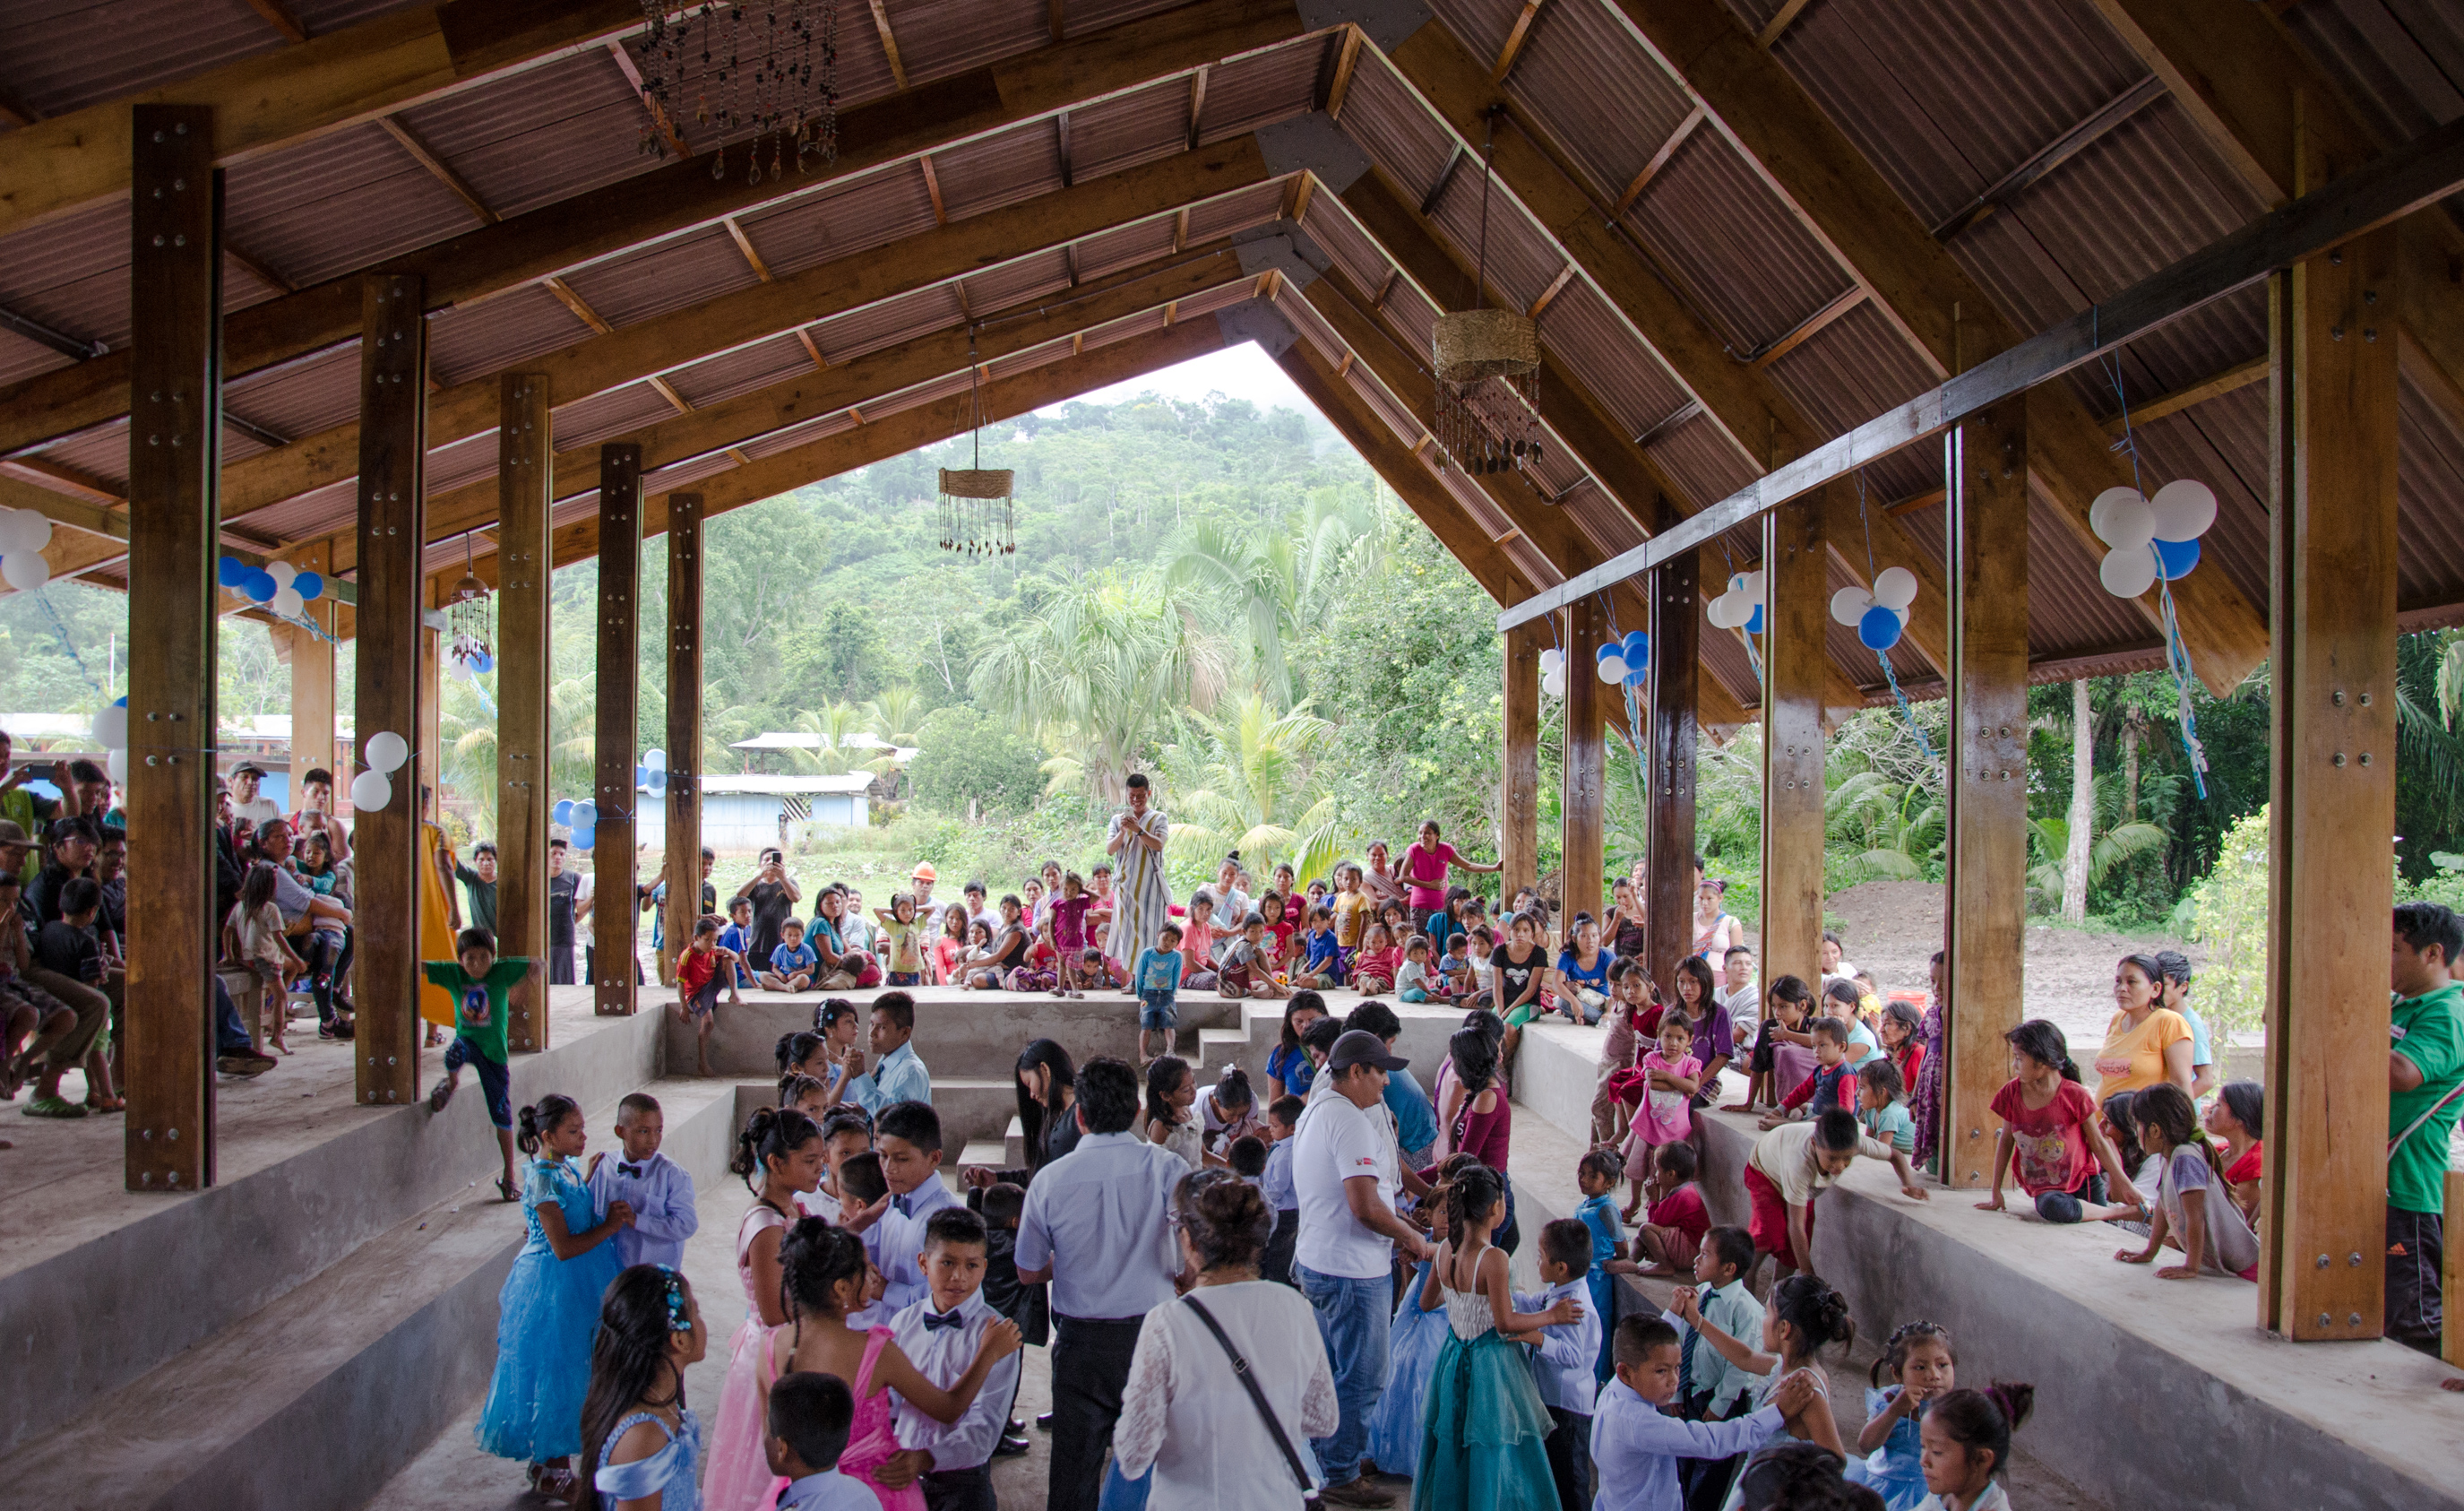 Otica community center in Junín